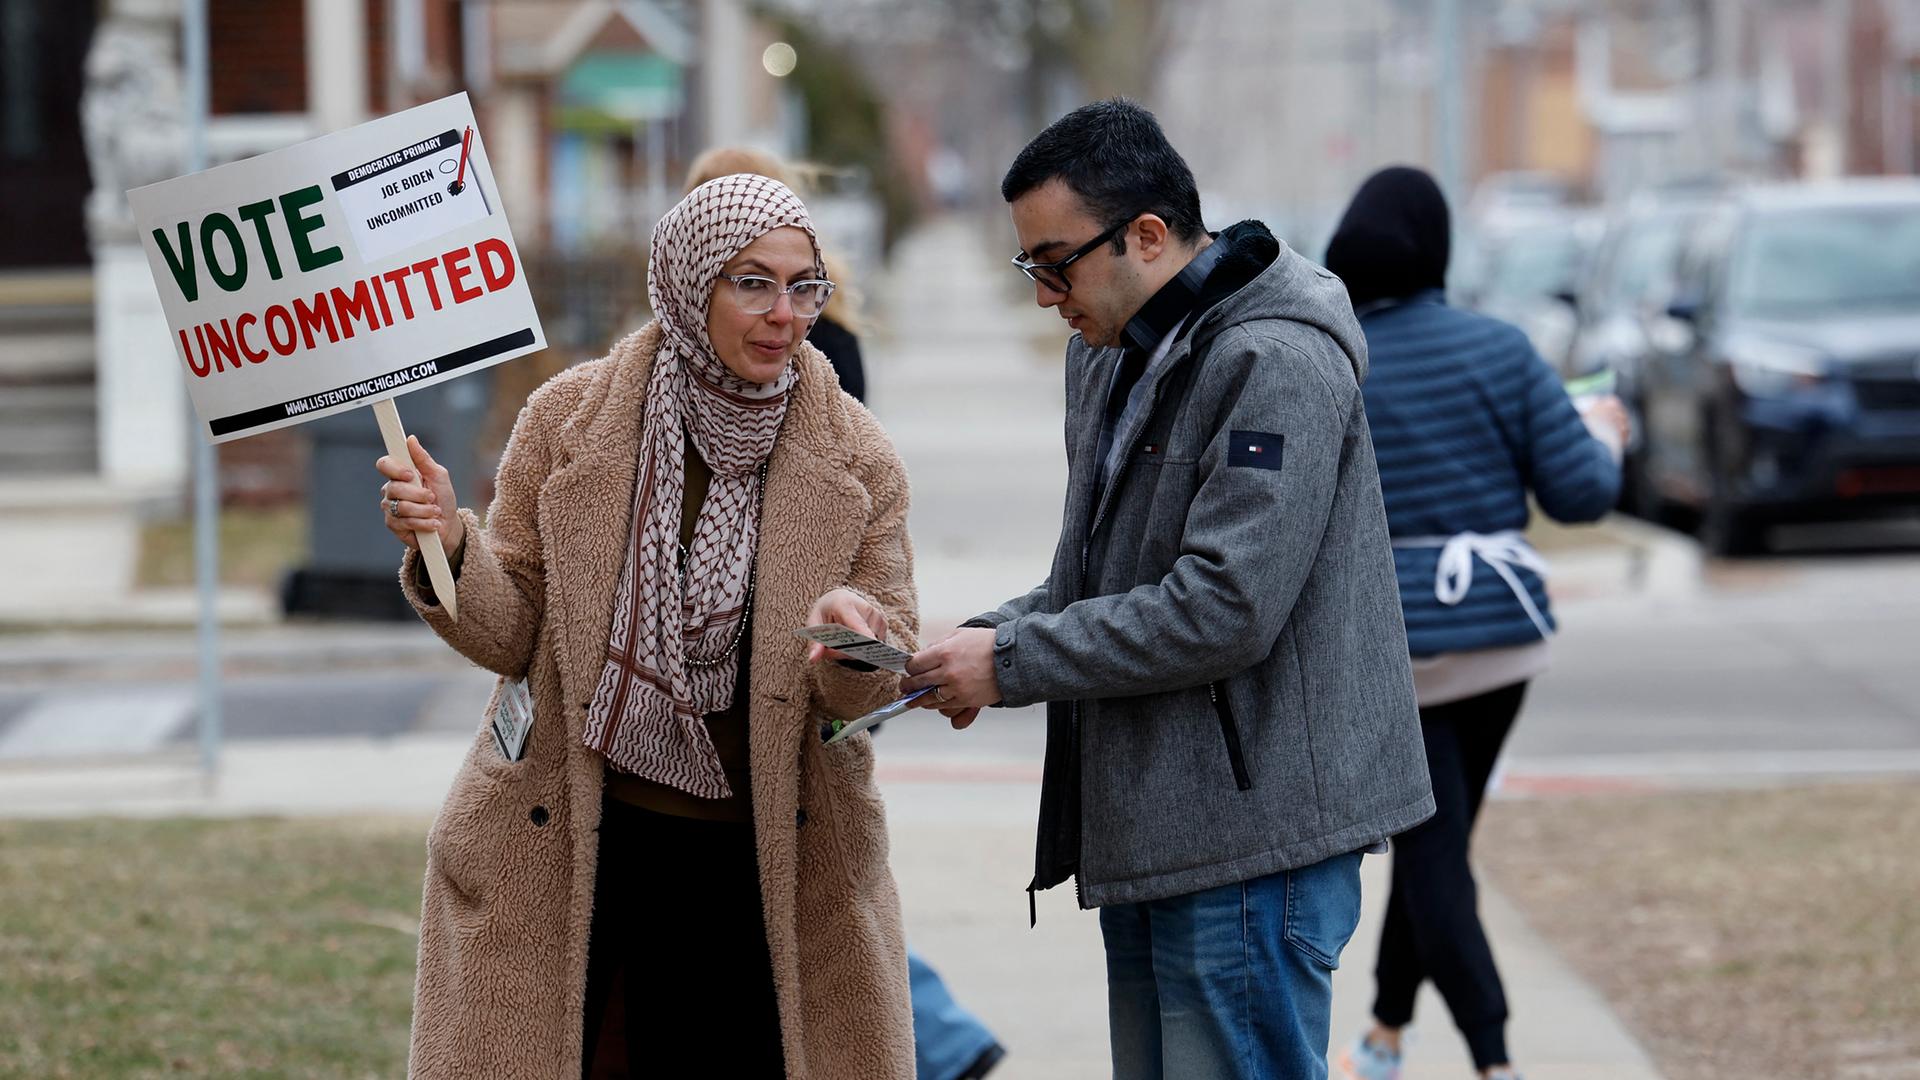 Eine muslimische Frau spricht auf der Straße mit einem Mann. Sie hält ein Plakat in der Hand mit der Aufschrift "Vote uncommitted" (deutsch: "Wähle neutral").